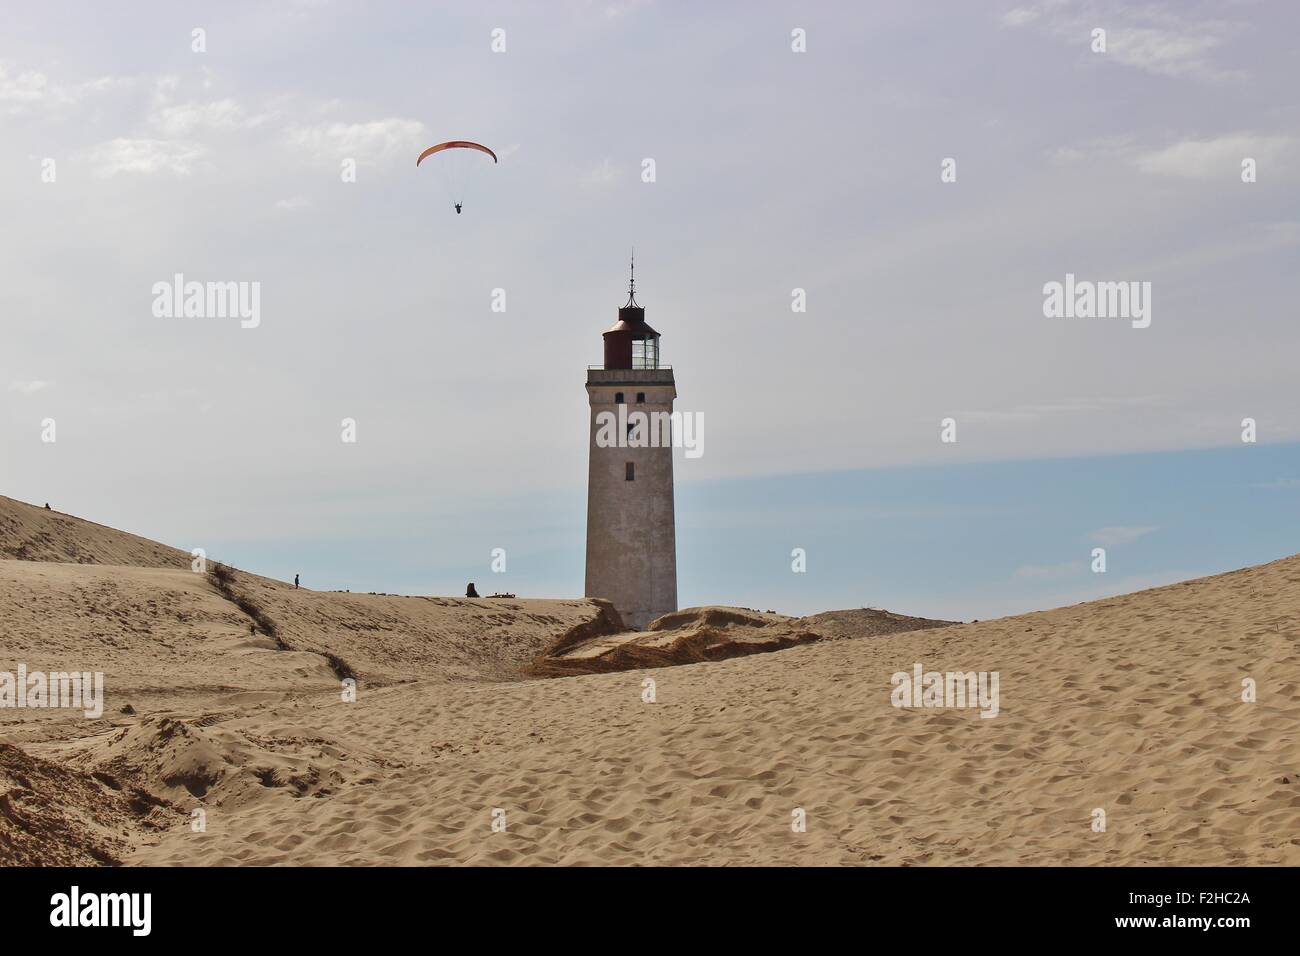 Leuchtturm in Dänemark, Skandinavien, Europa, mit Gleitschirm. Rubjerg Knude Fyr in Nordjütland, inmitten einer riesigen Verschiebung Düne. Stockfoto